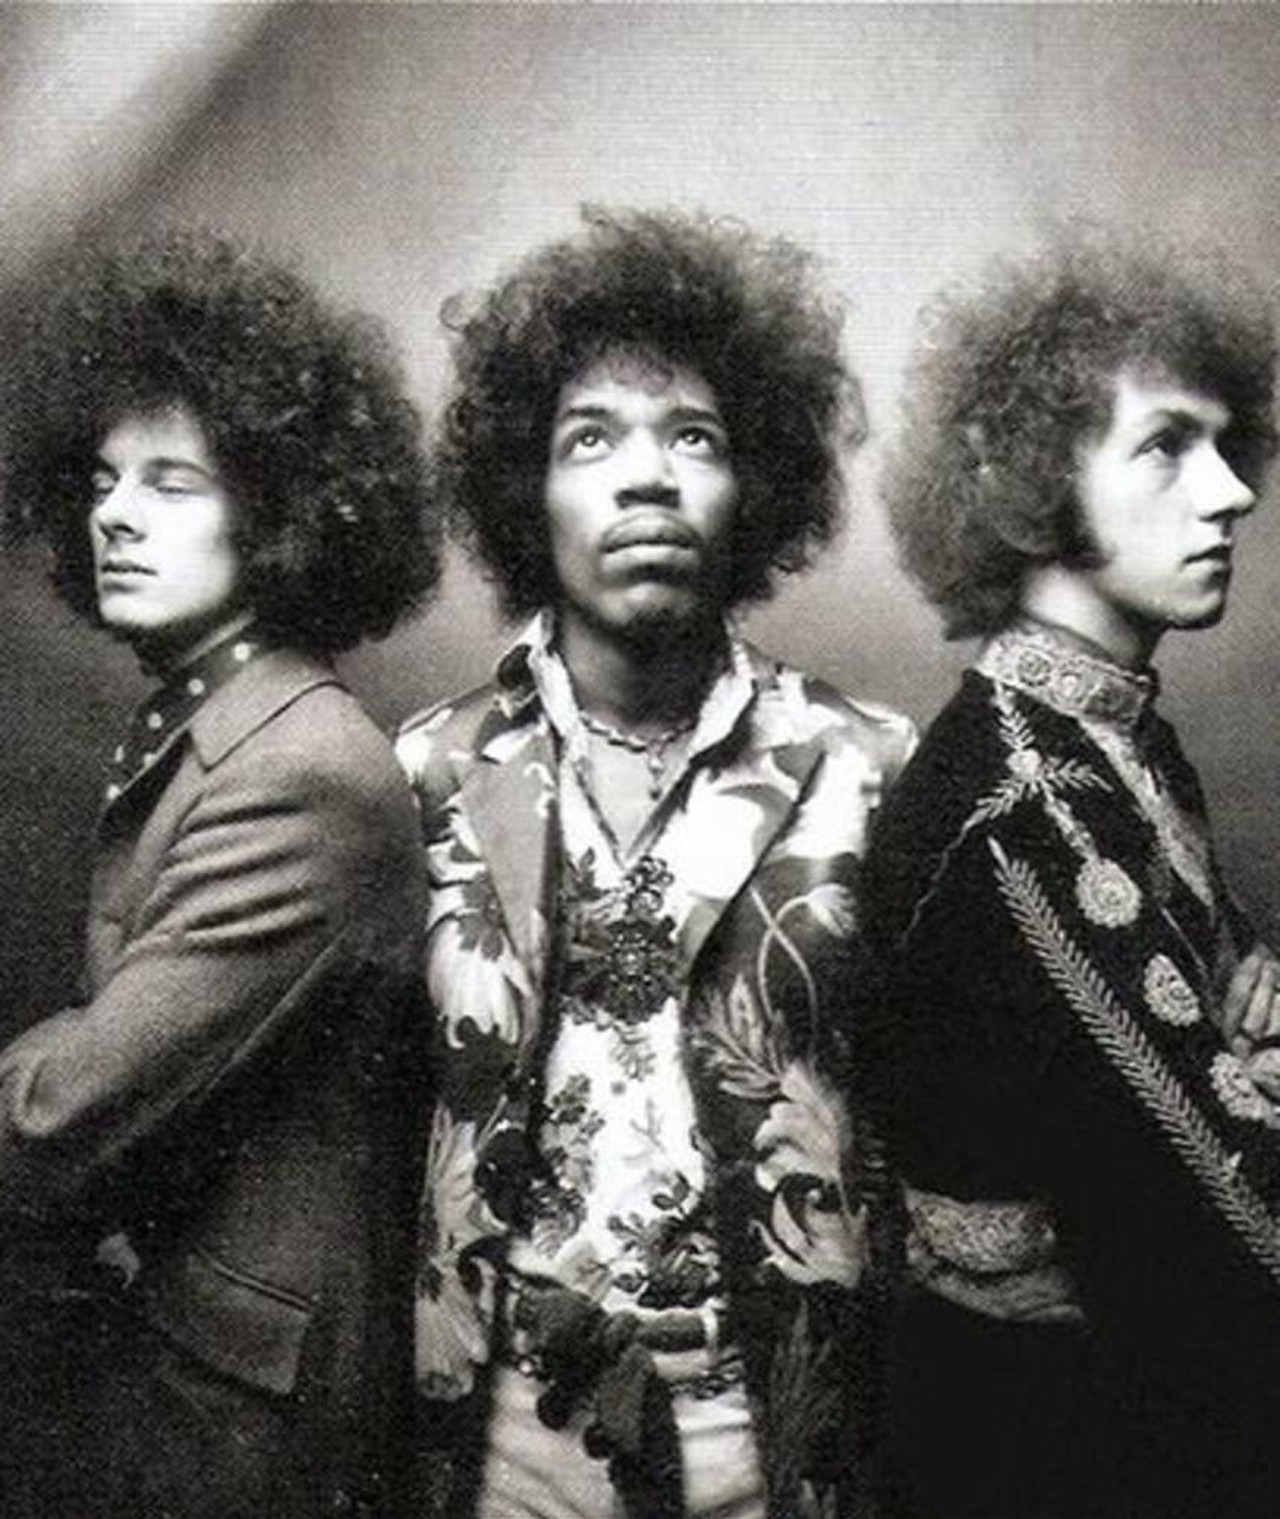 Photo of The Jimi Hendrix Experience